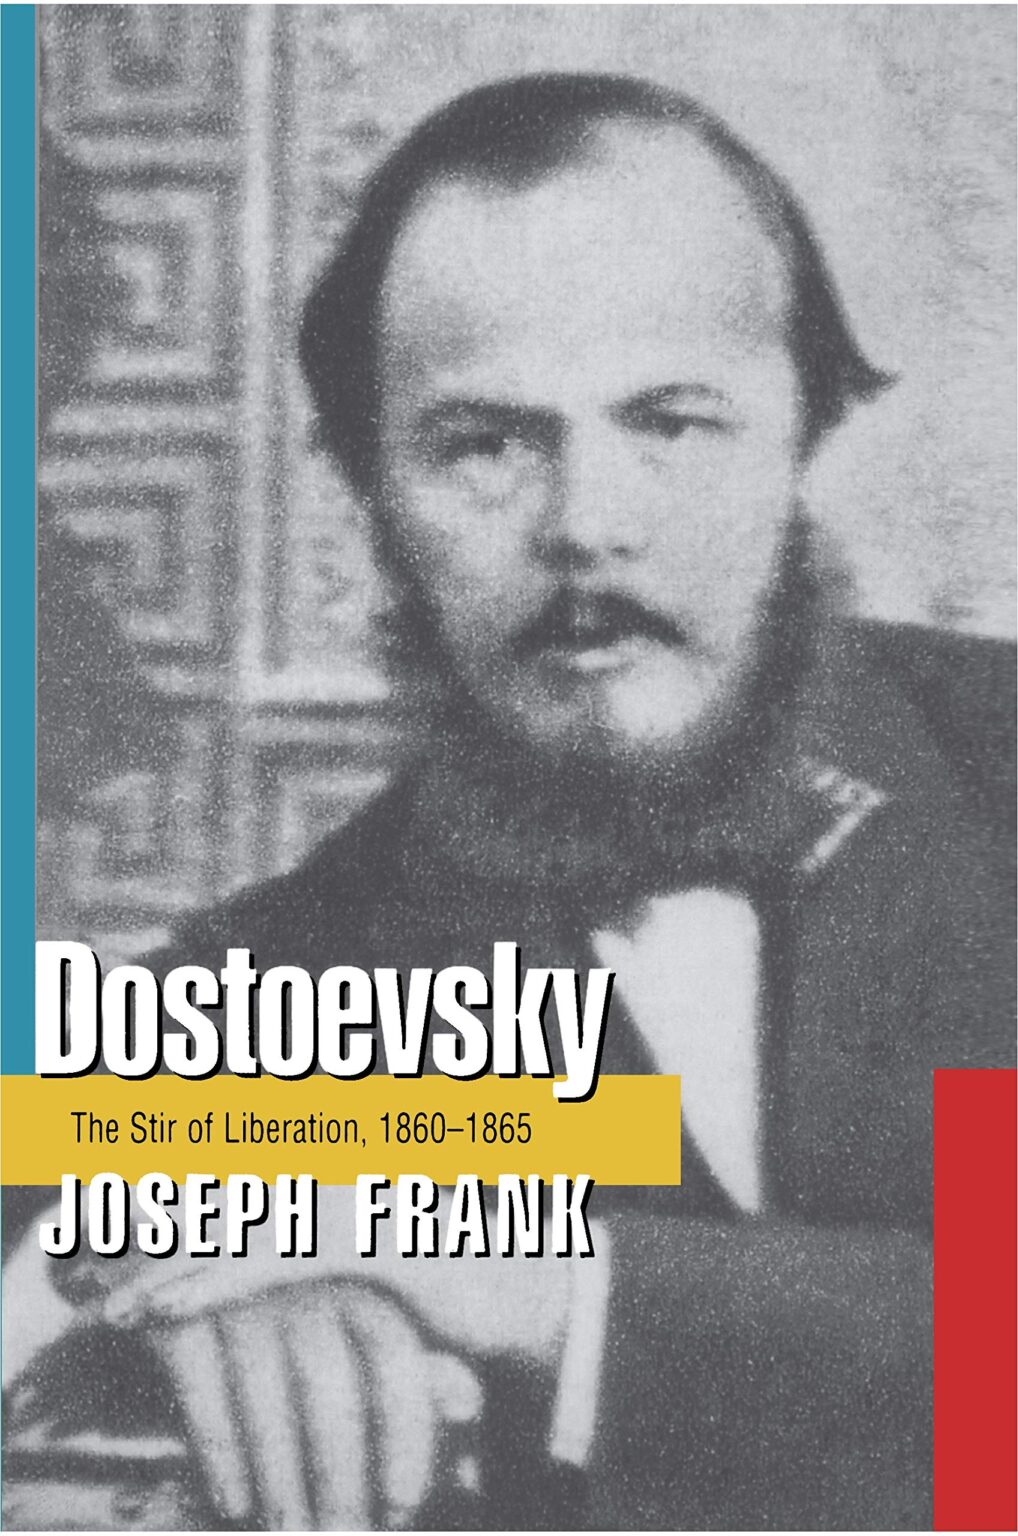 dostoevsky biography joseph frank